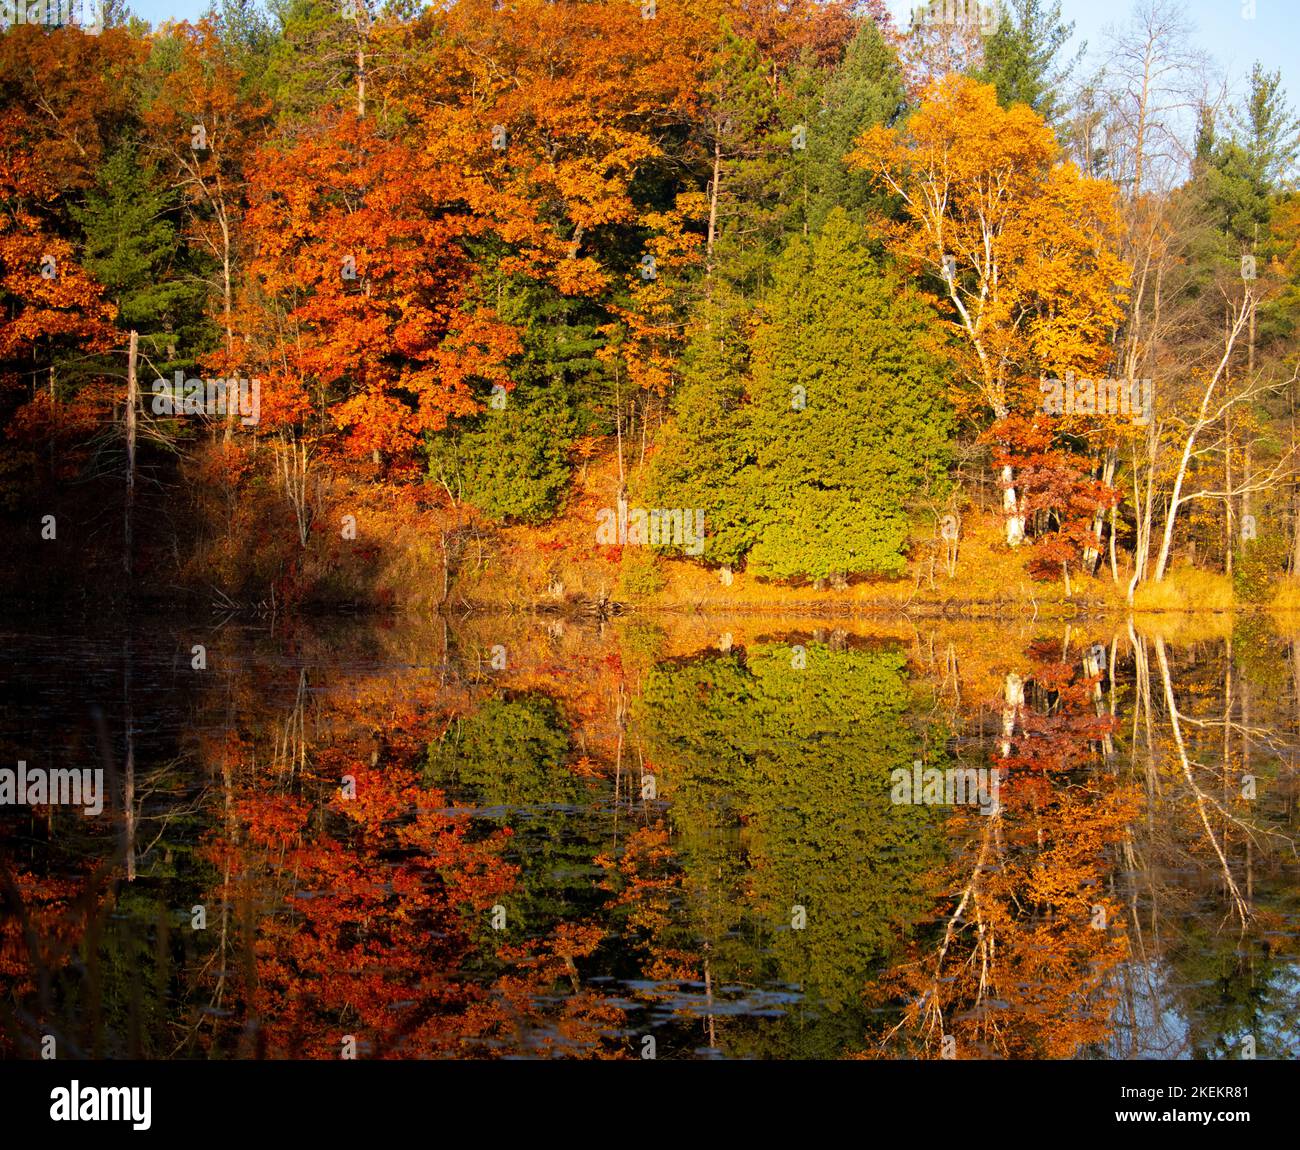 Reflet brillant des couleurs d'automne rouge, jaune, orange et vert flamboyantes dans le Michigan supérieur, reflétées dans l'eau de l'étang. Banque D'Images